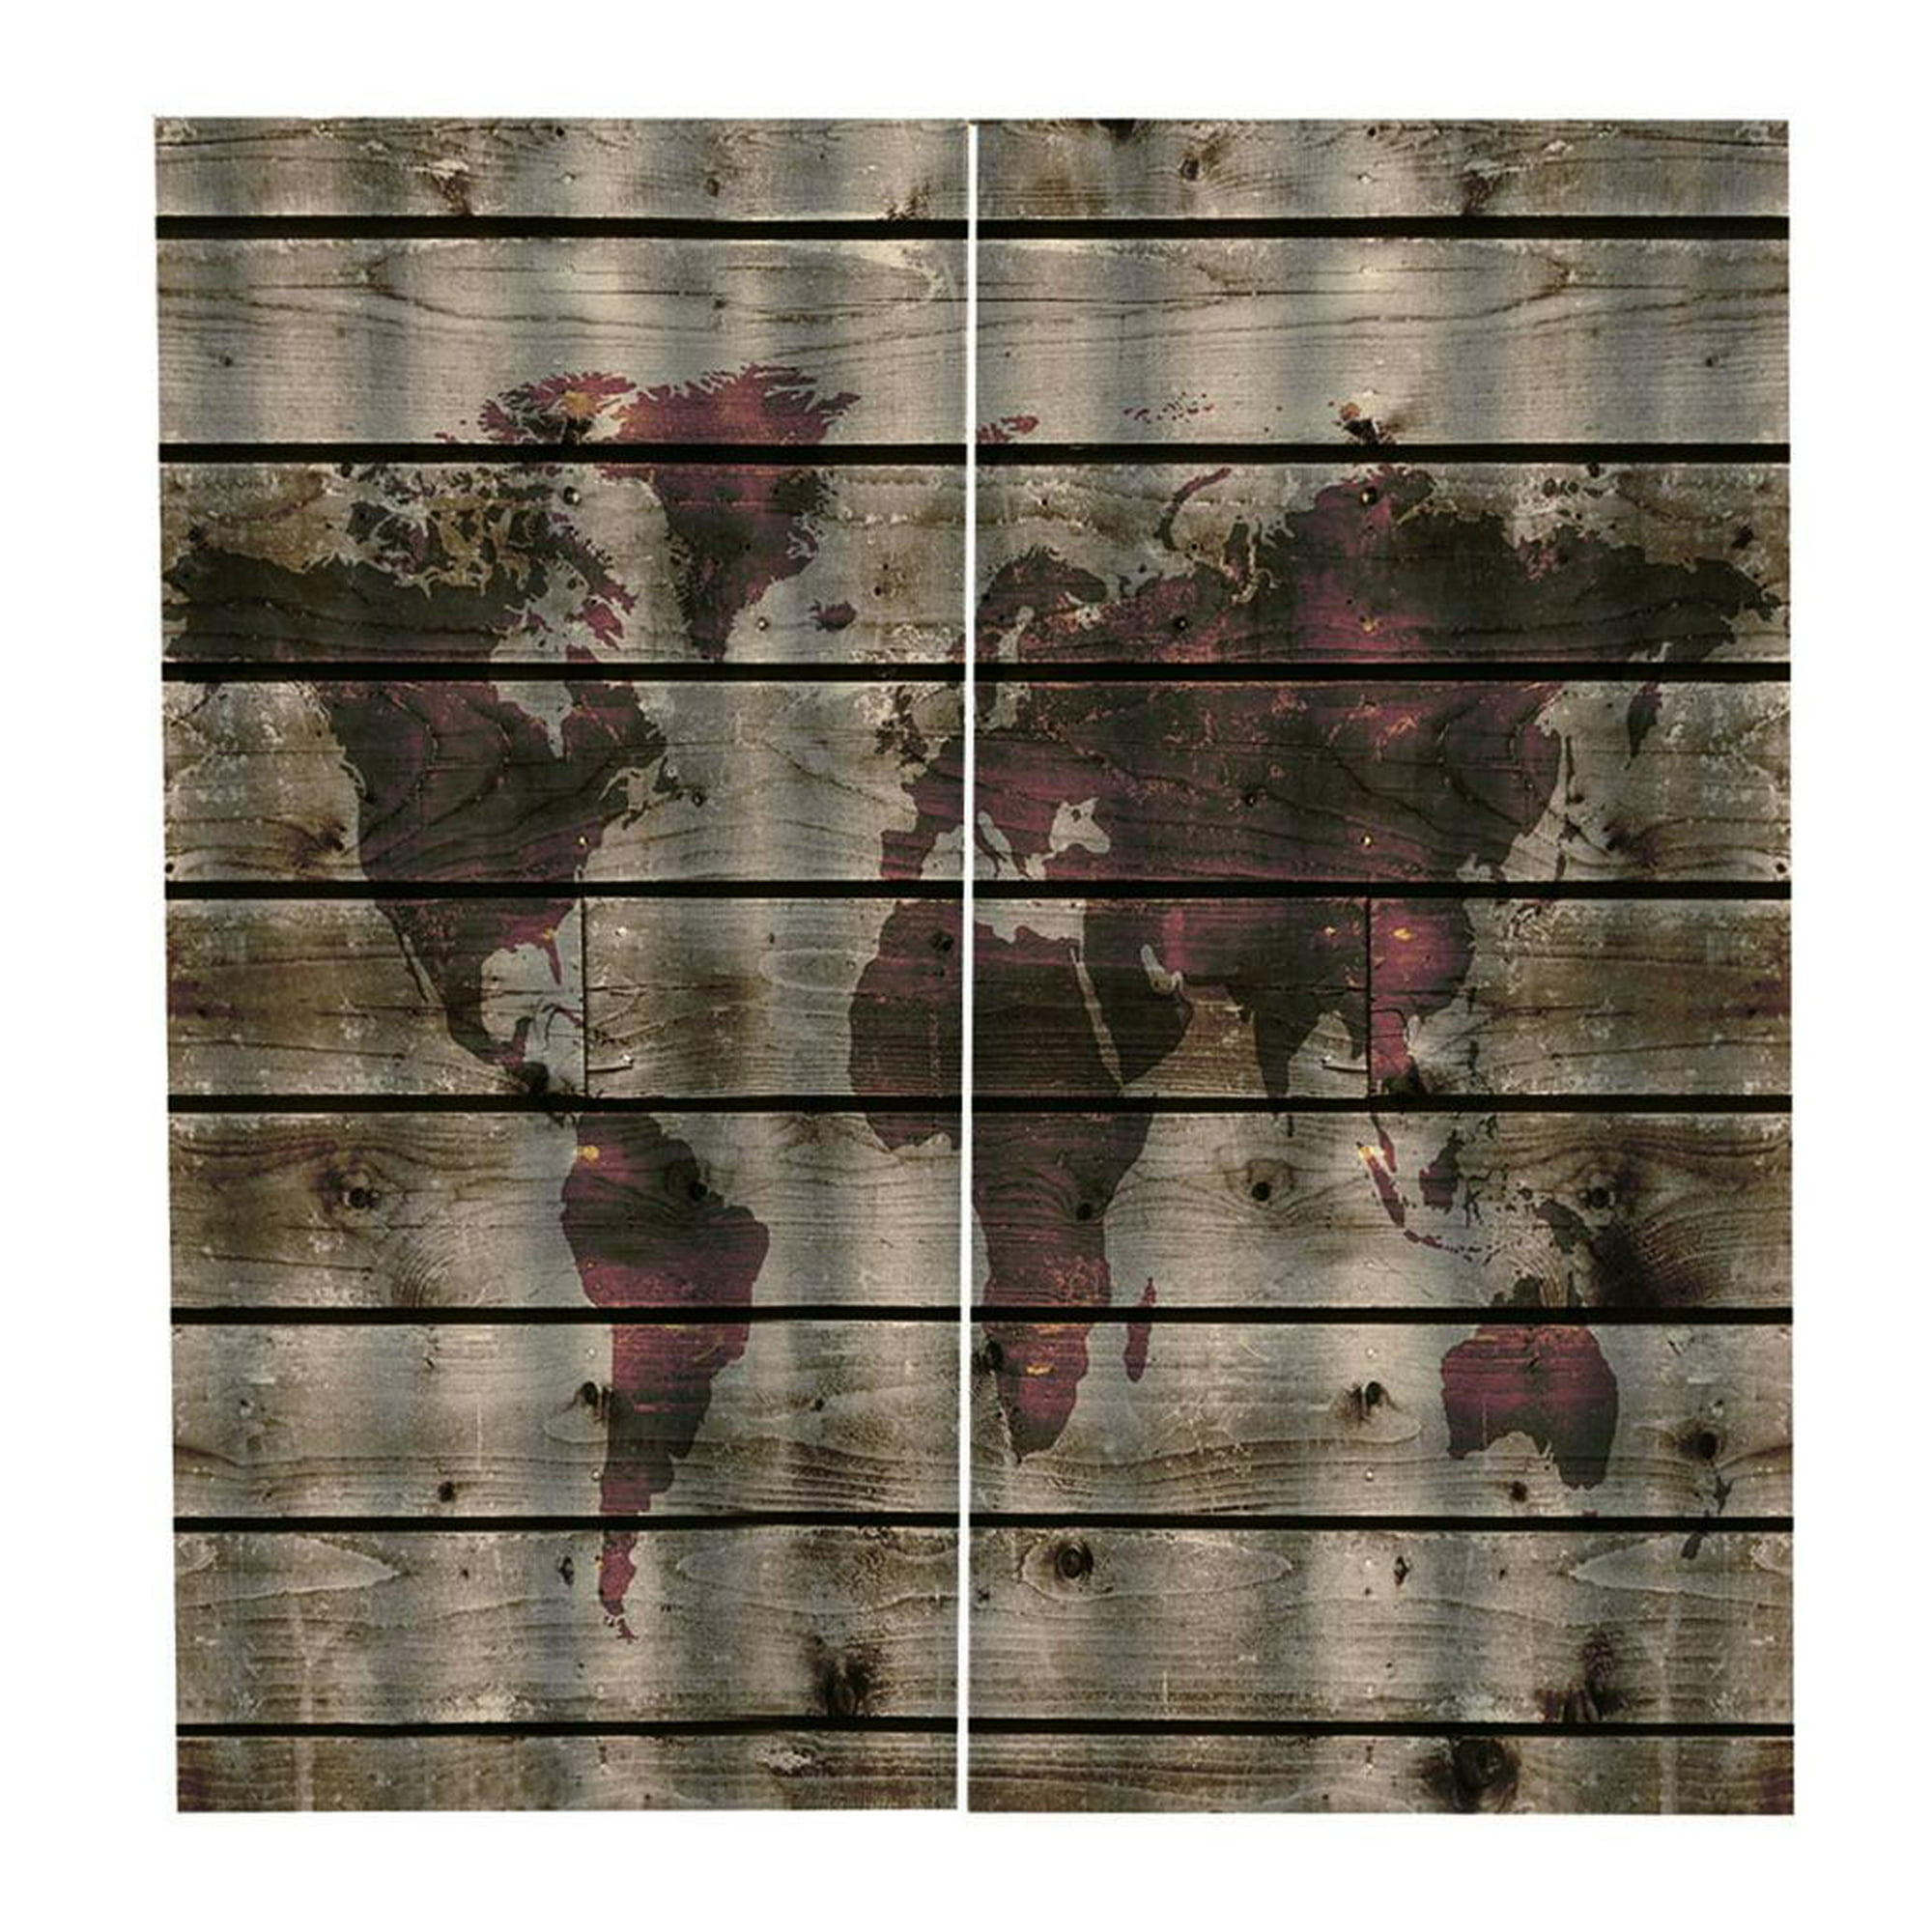 Cortinas de Impresión Digital de Oscurecimiento para Salón - 2 Paneles  150x166cm + Ganchos + Anillos Silenciosos J Macarena Panel de cortina opaco